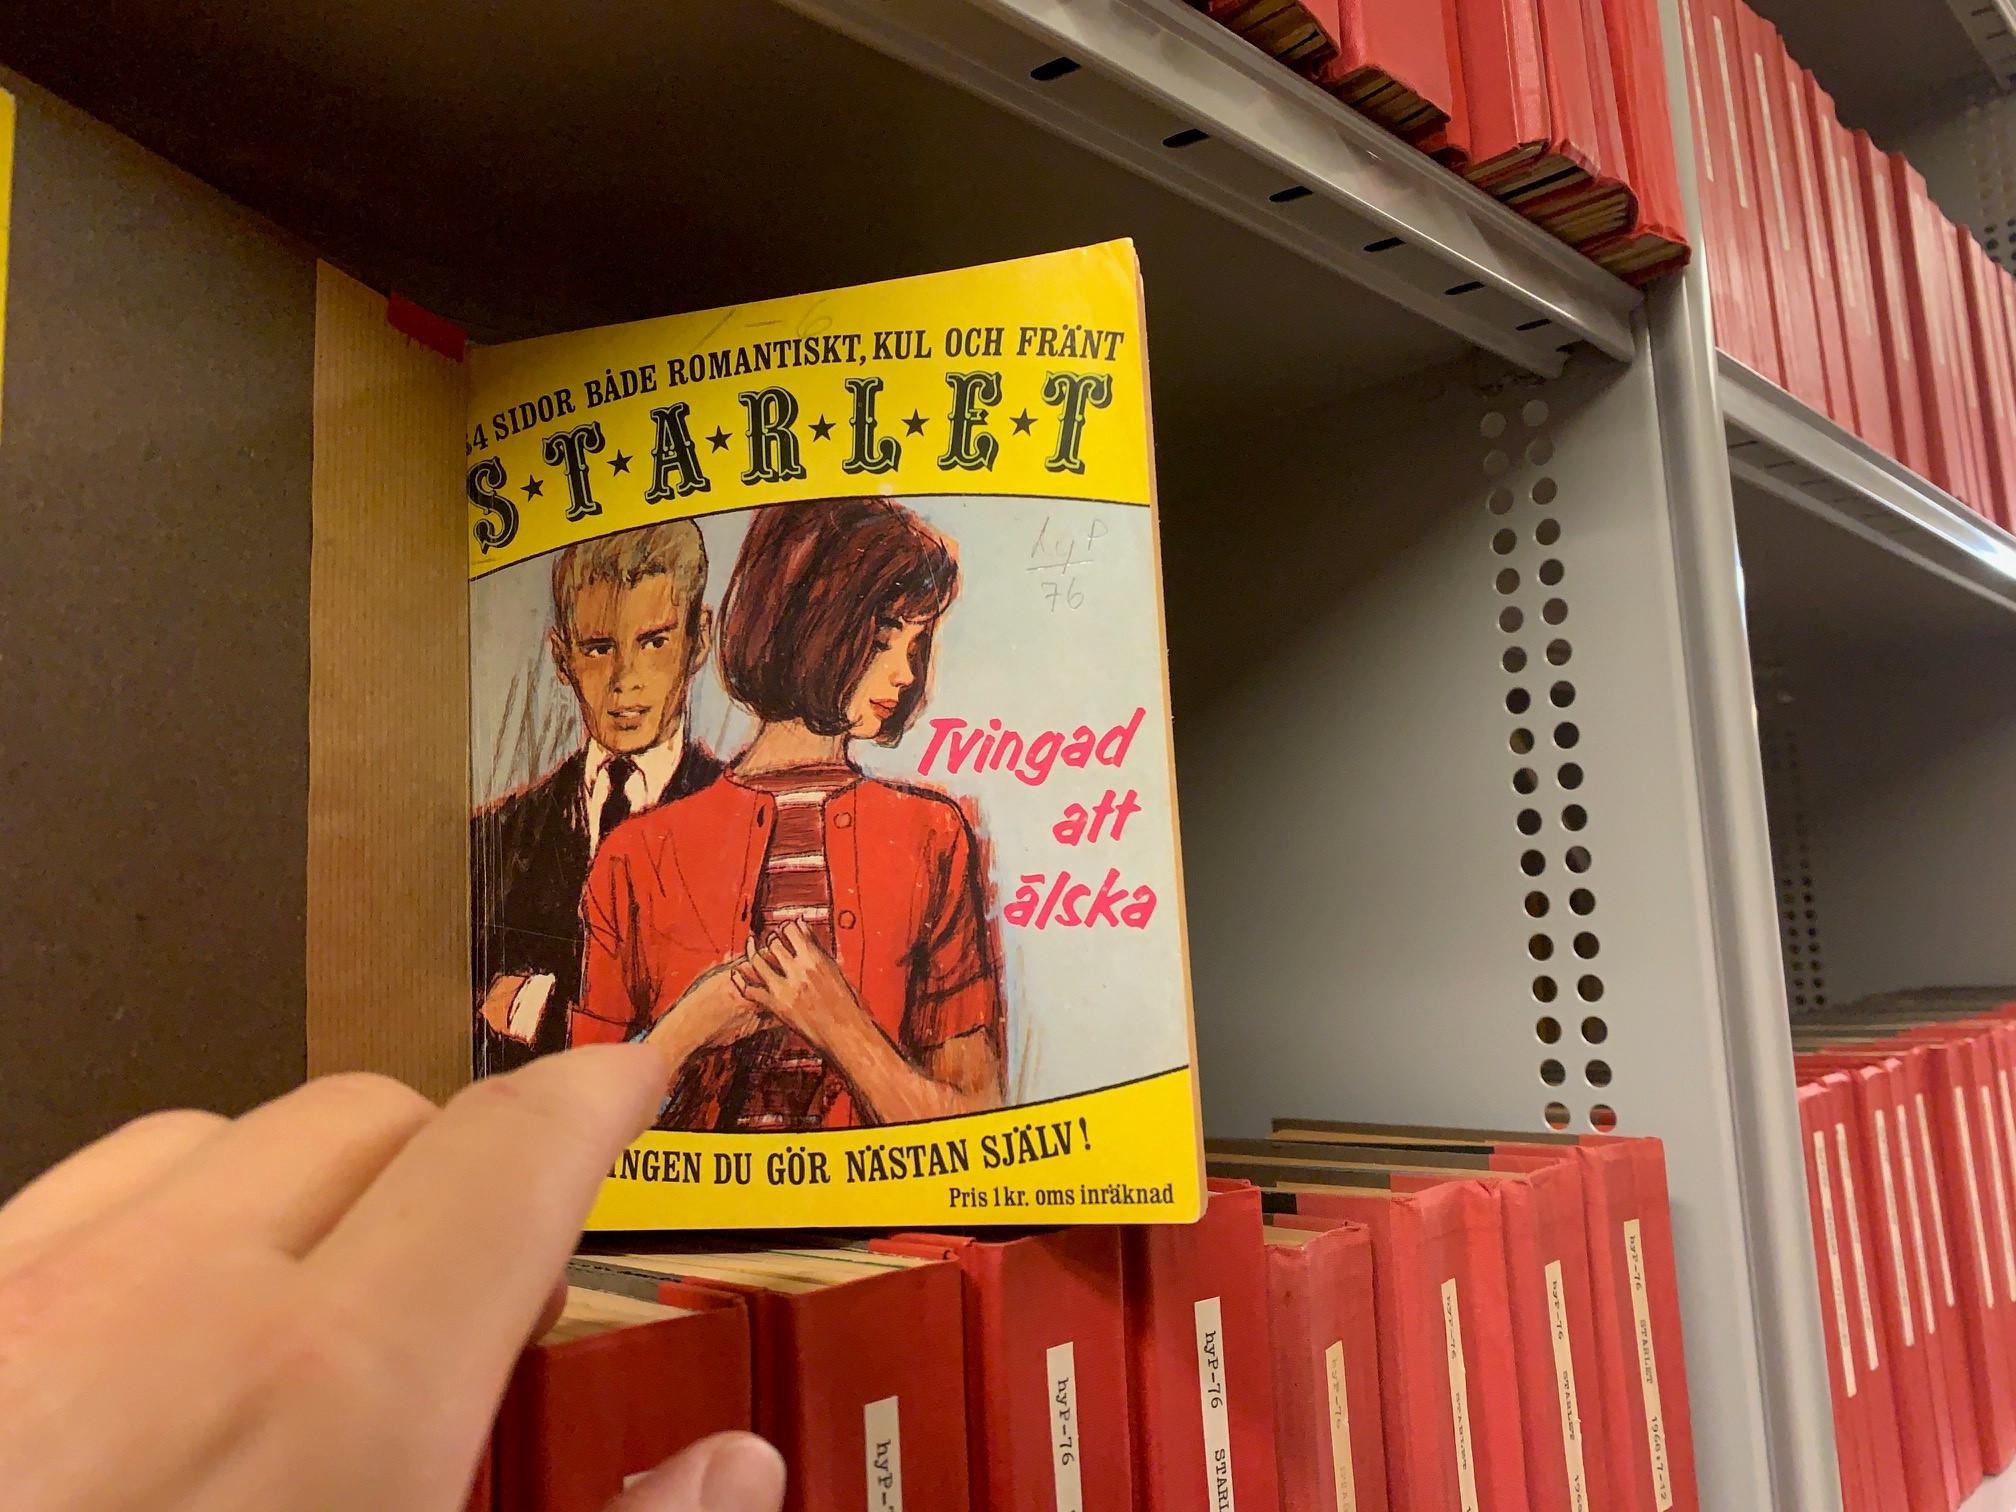 Färgfotografi av en tecknat tidskriftsomslag med ett ungt par och rubriken "Tvingad att älska", omgivet av röda bokryggar.